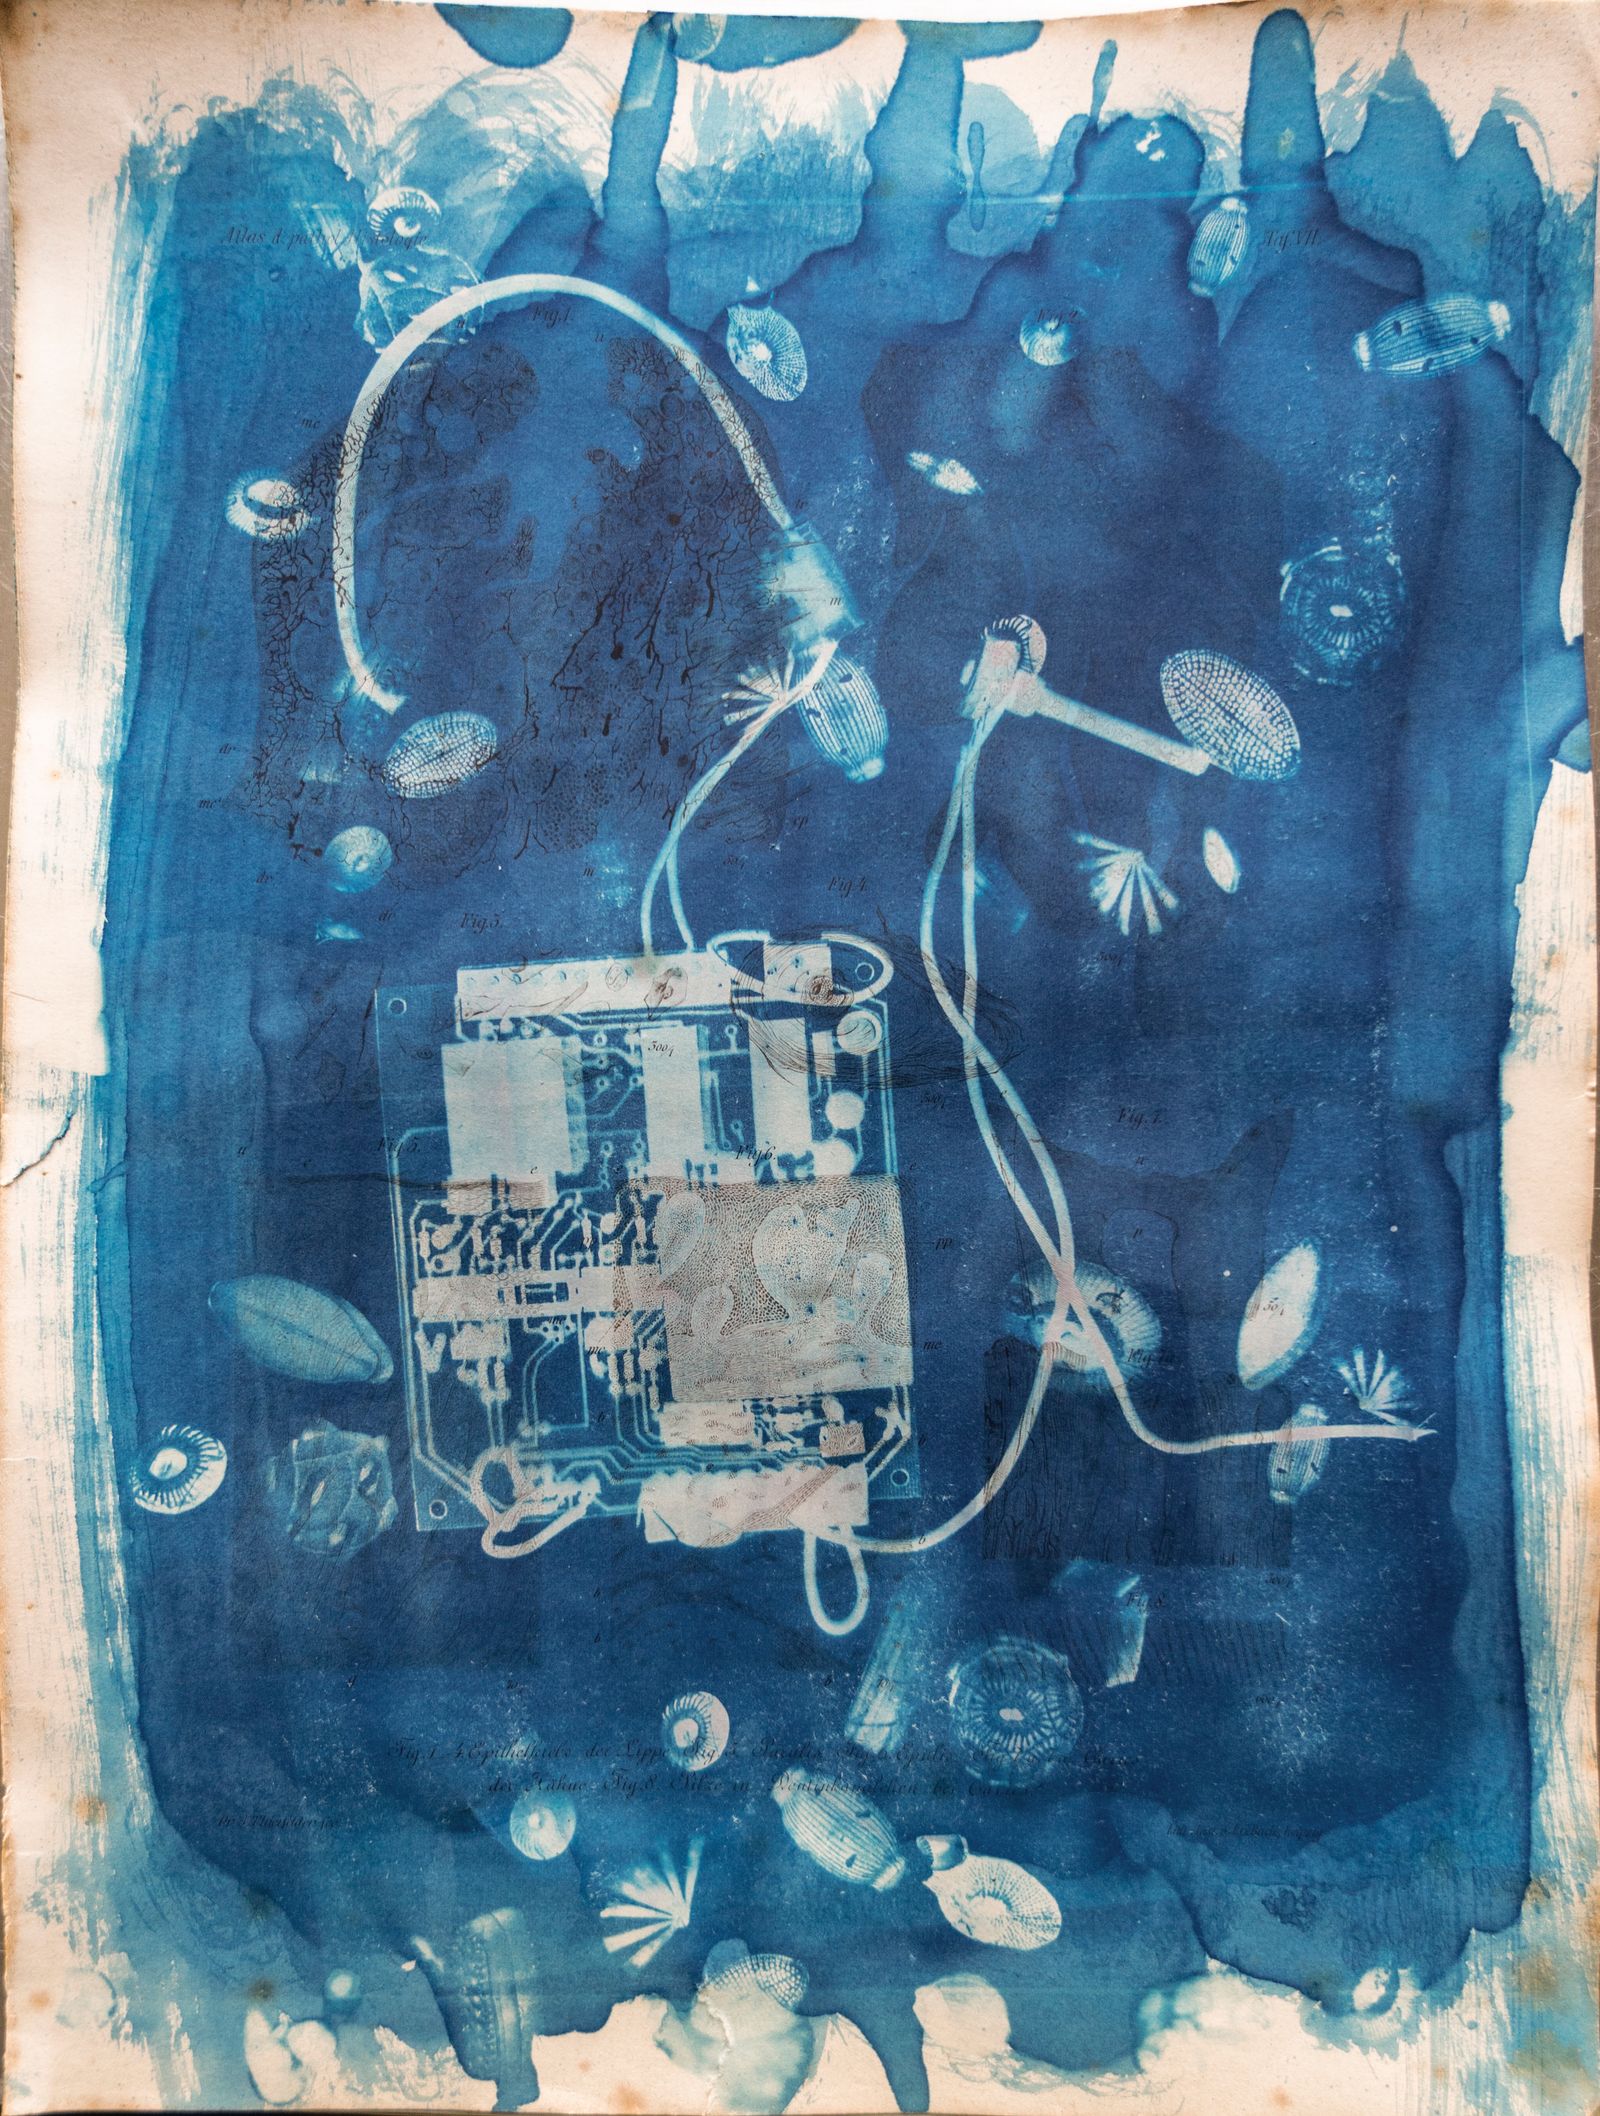 © Florence Iff - Amalgamated Fragmentation/ Technosphere 9 cyanotype on vintage lithography